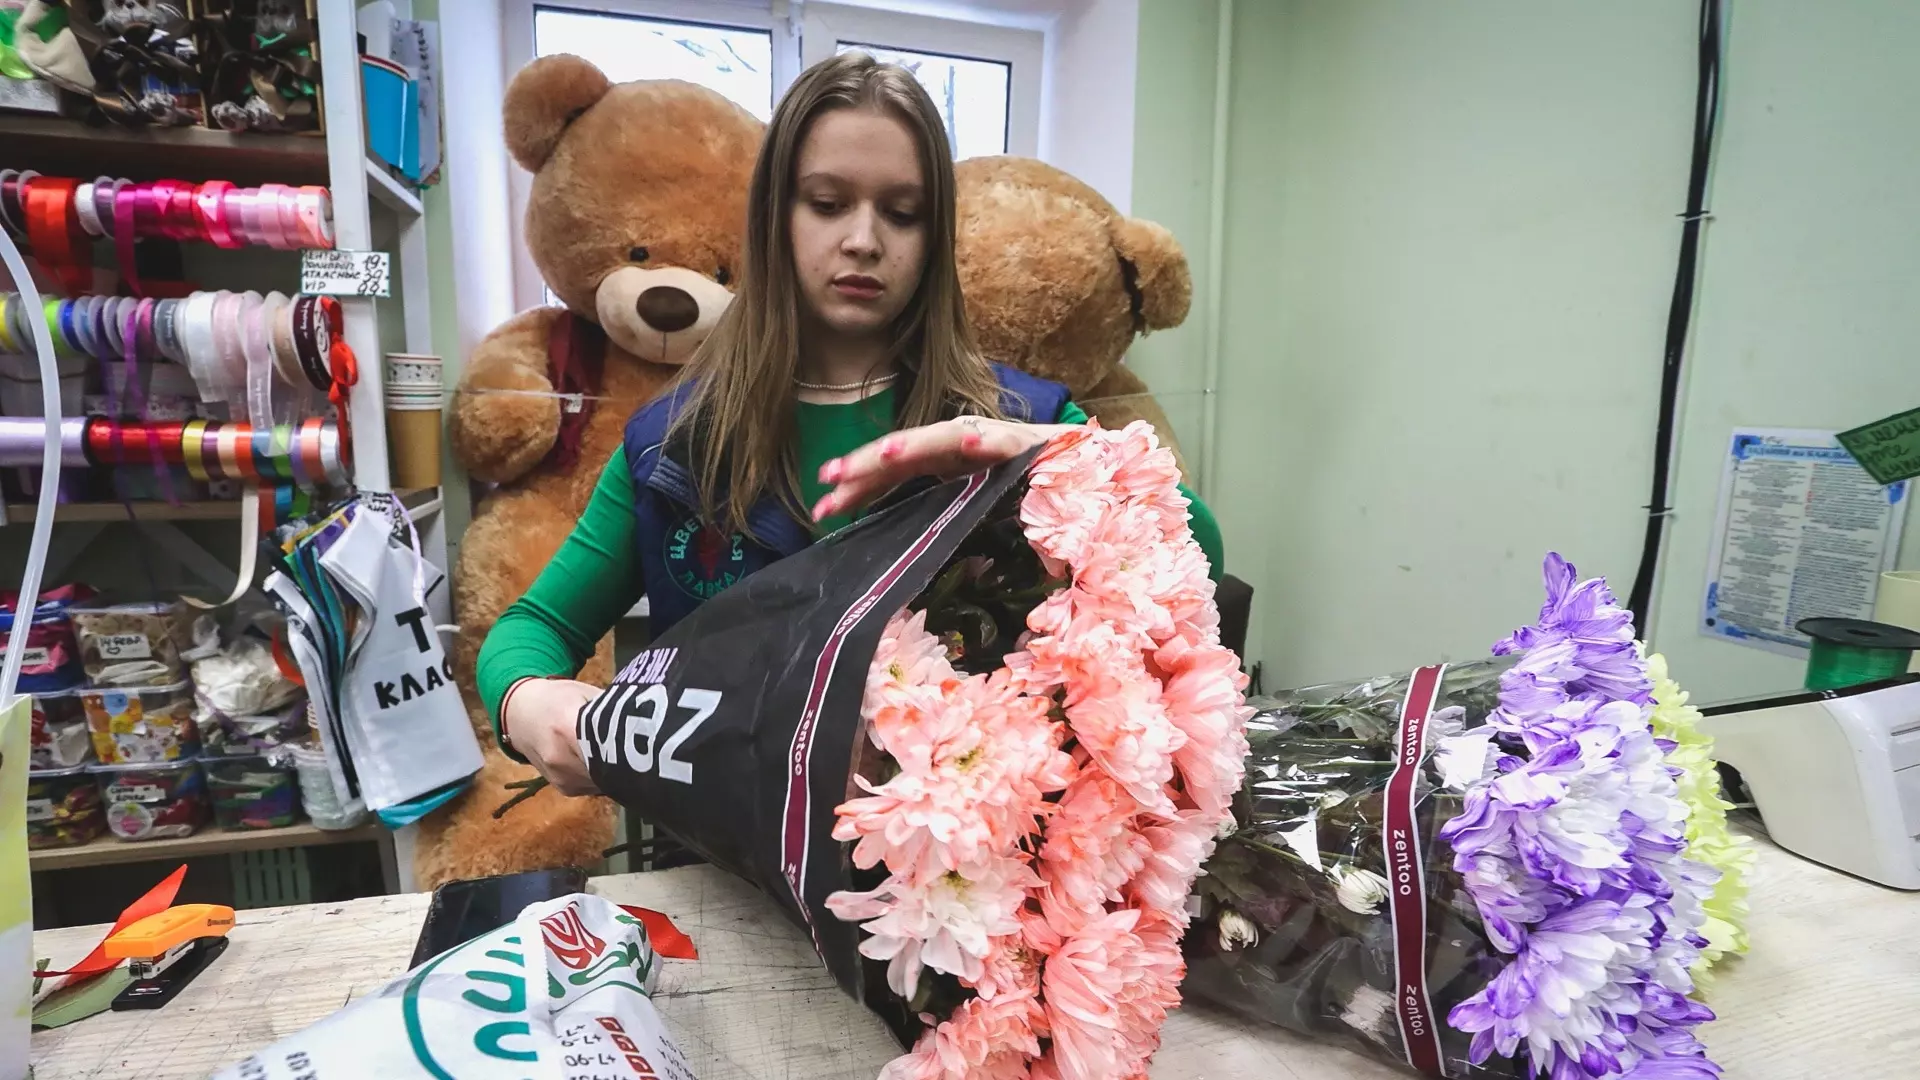 8 Марта без подарка? Аферисты украли 1,5 тонны цветов, предназначенных для Челябинска